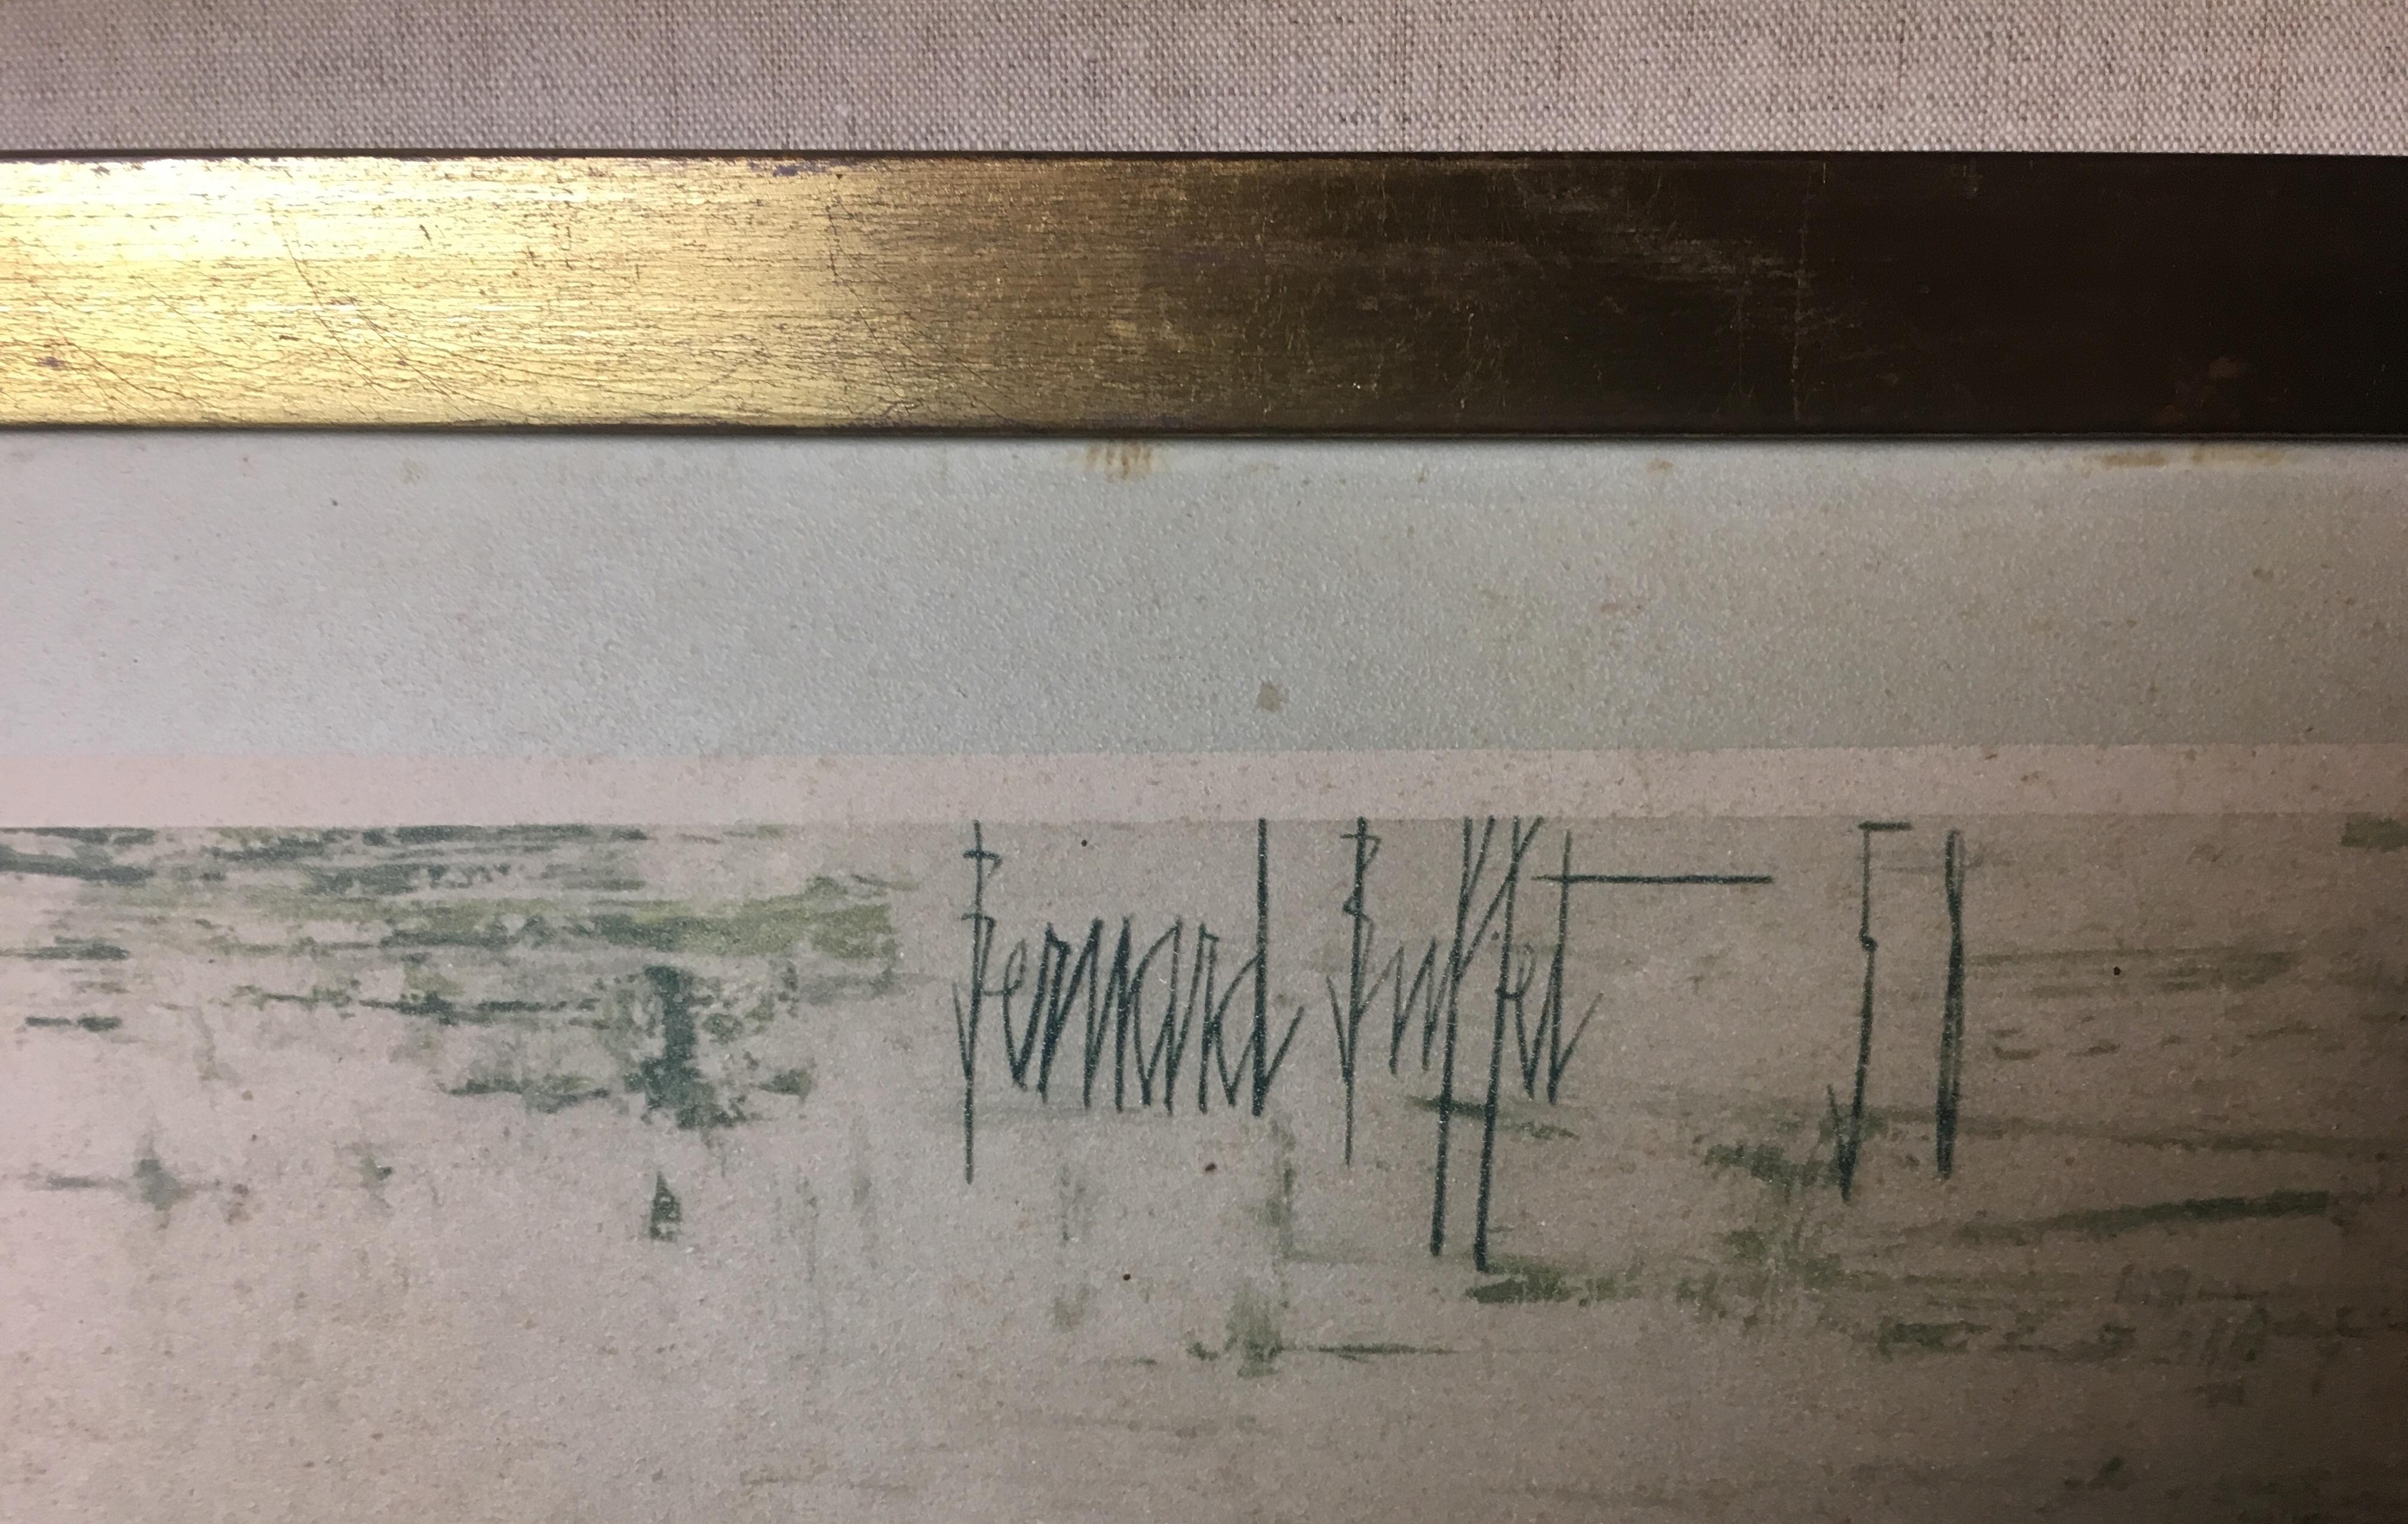 Limitierte Auflage:: Radierung und Kaltnadelradierung:: gedruckt auf Arches-Waffelpapier:: 1958 von dem französischen Künstler Bernard Buffet (1928-1999) geschaffen. Dieses Stück wurde speziell für ein Labor in New York angefertigt. 

Buffet wurde